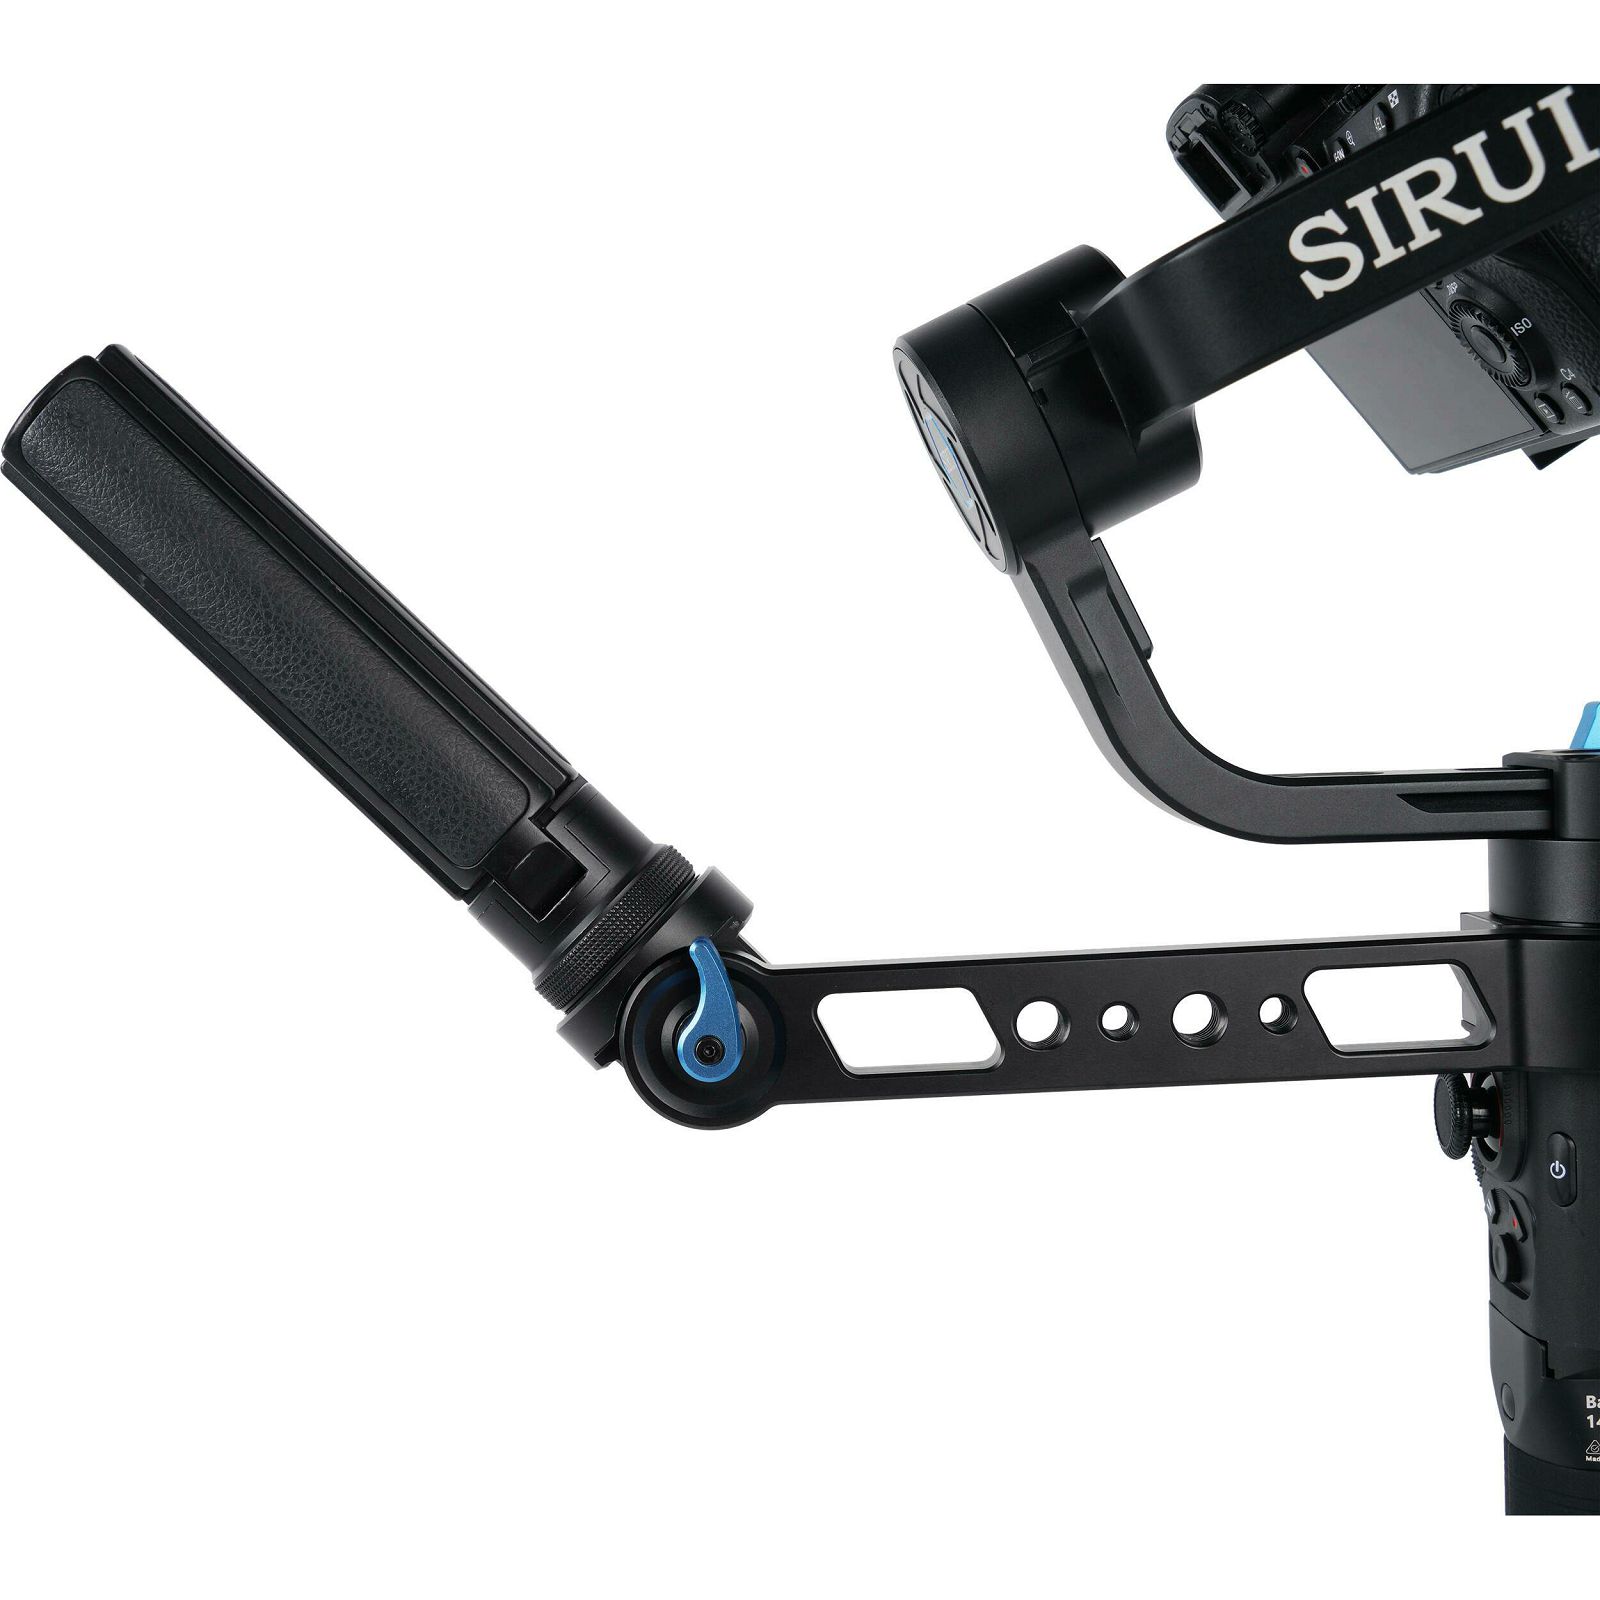 Sirui EX-BH Extension Bracket Holder for EX Stabilizer